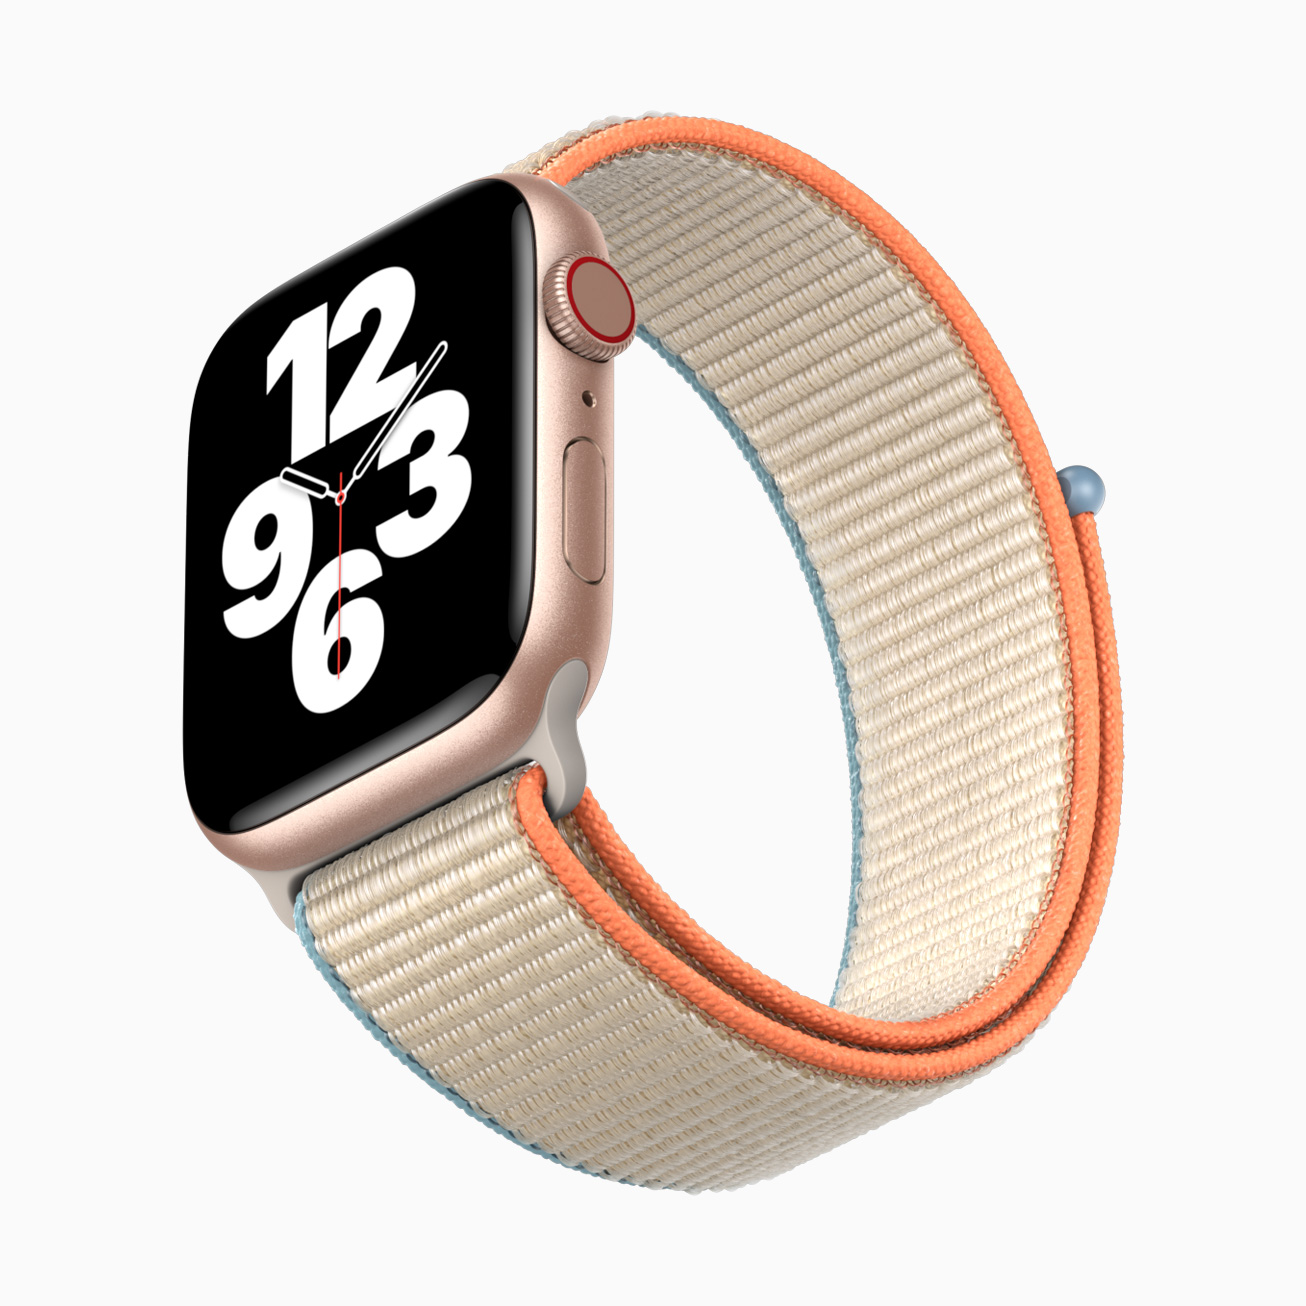 Apple watch se watchface 09152020